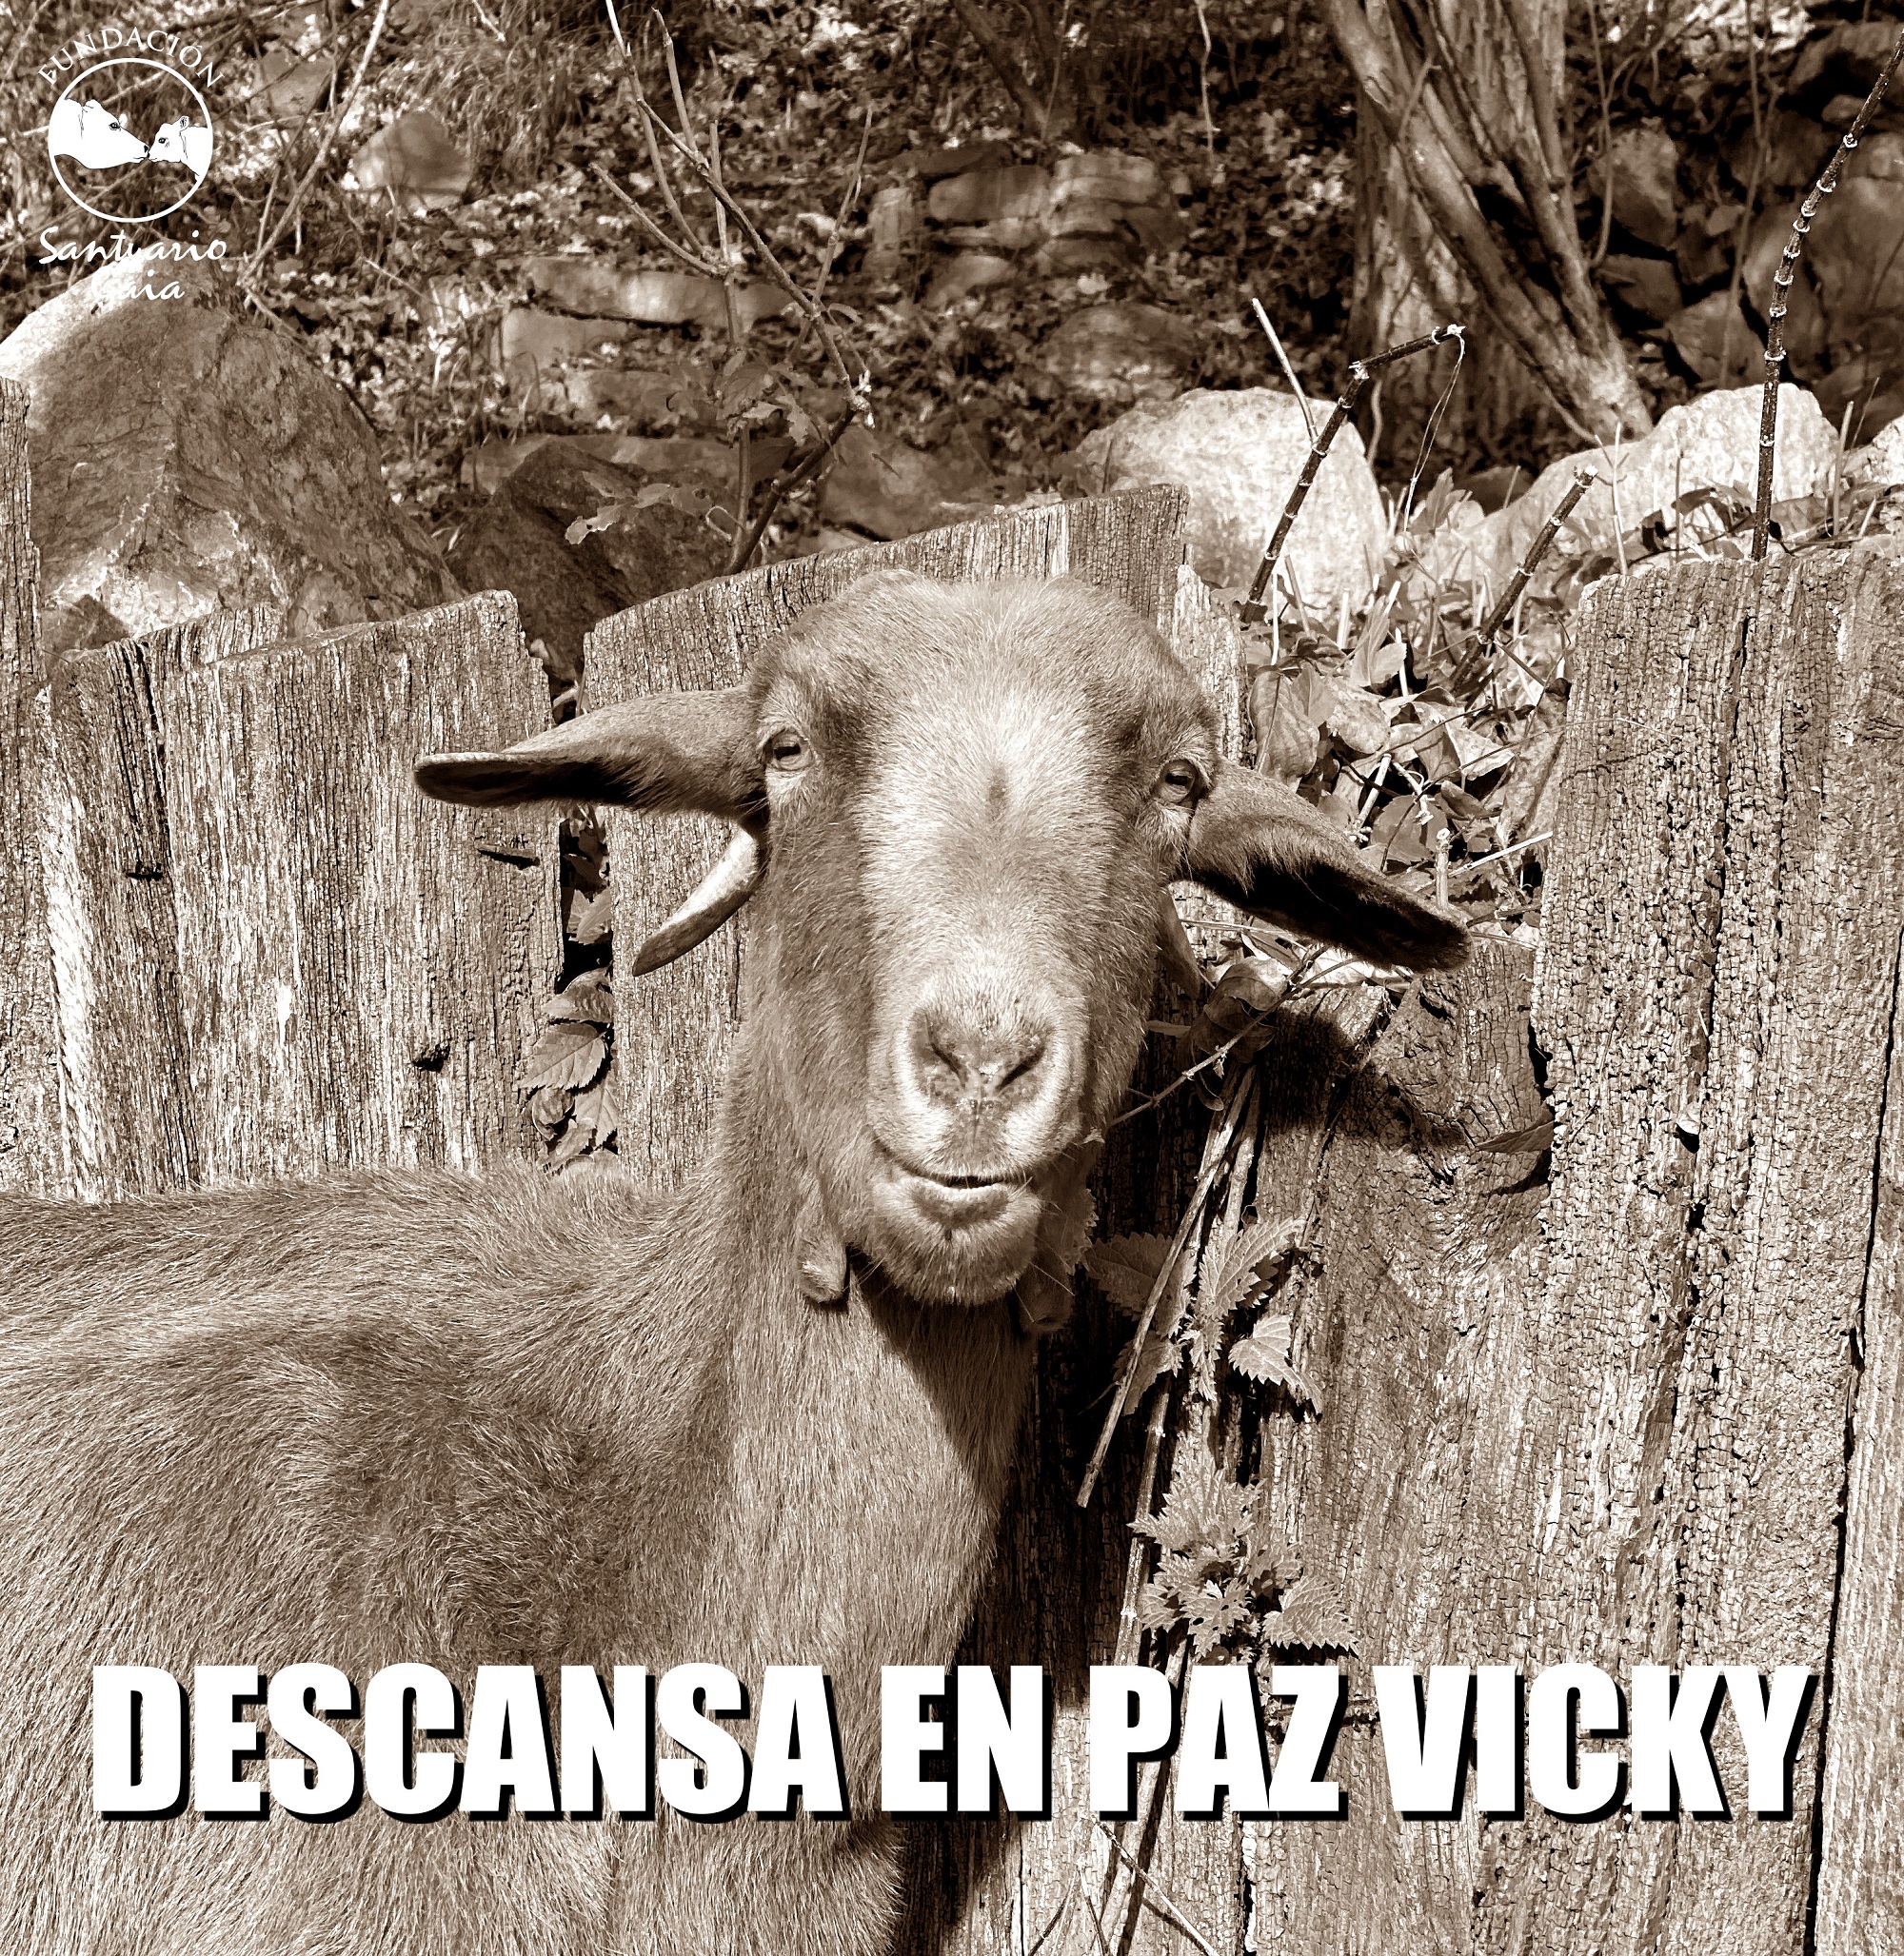 RIP VICKY